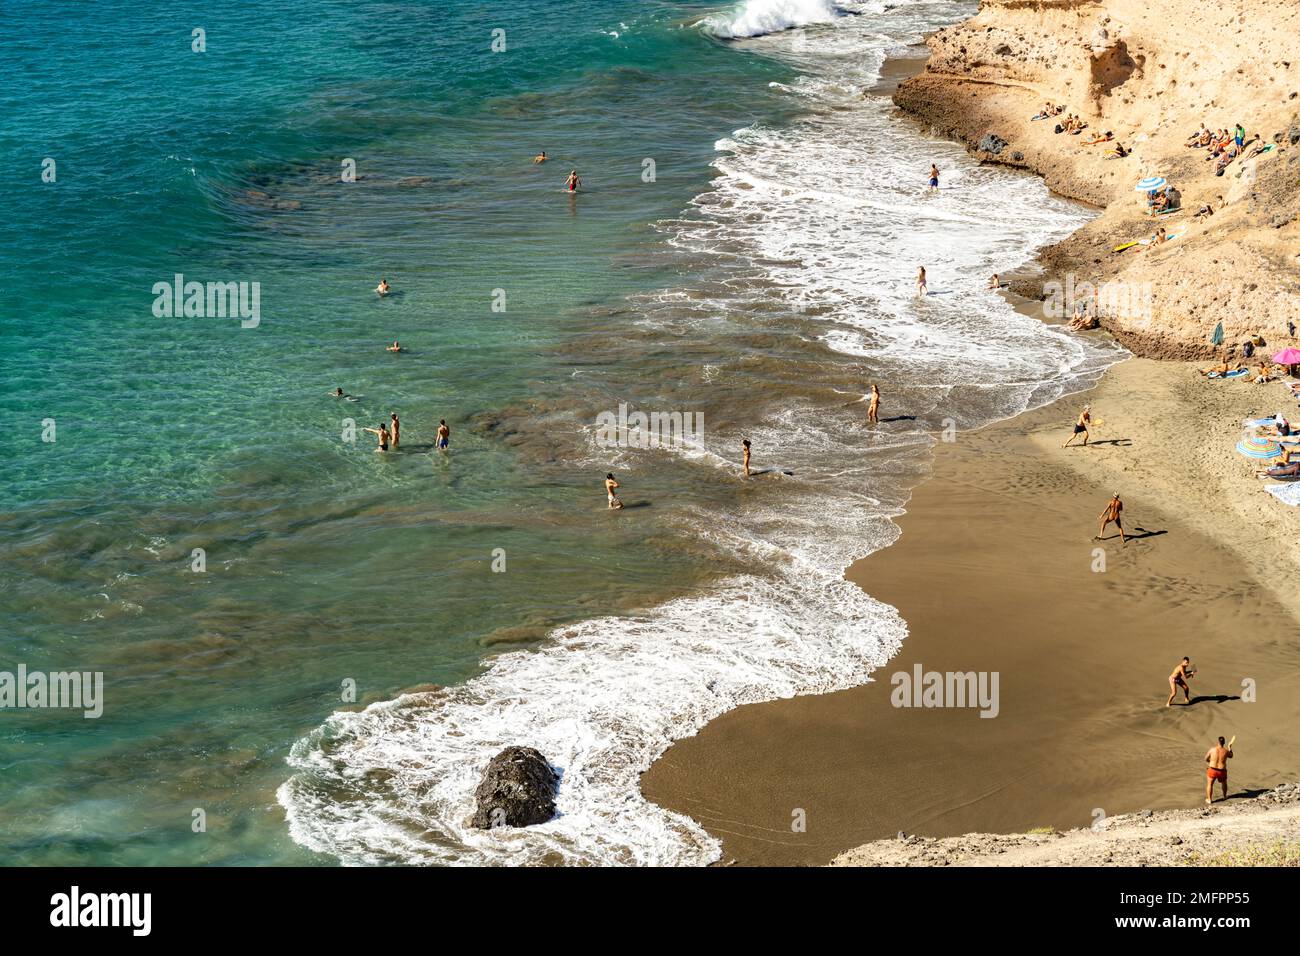 Der Strand Playa de Diego Hernandez an der Costa Adeje, Teneriffa, Kanarische Inseln, Spanien |  The Costa Adeje beach Playa de Diego Hernandez, Tener Stock Photo